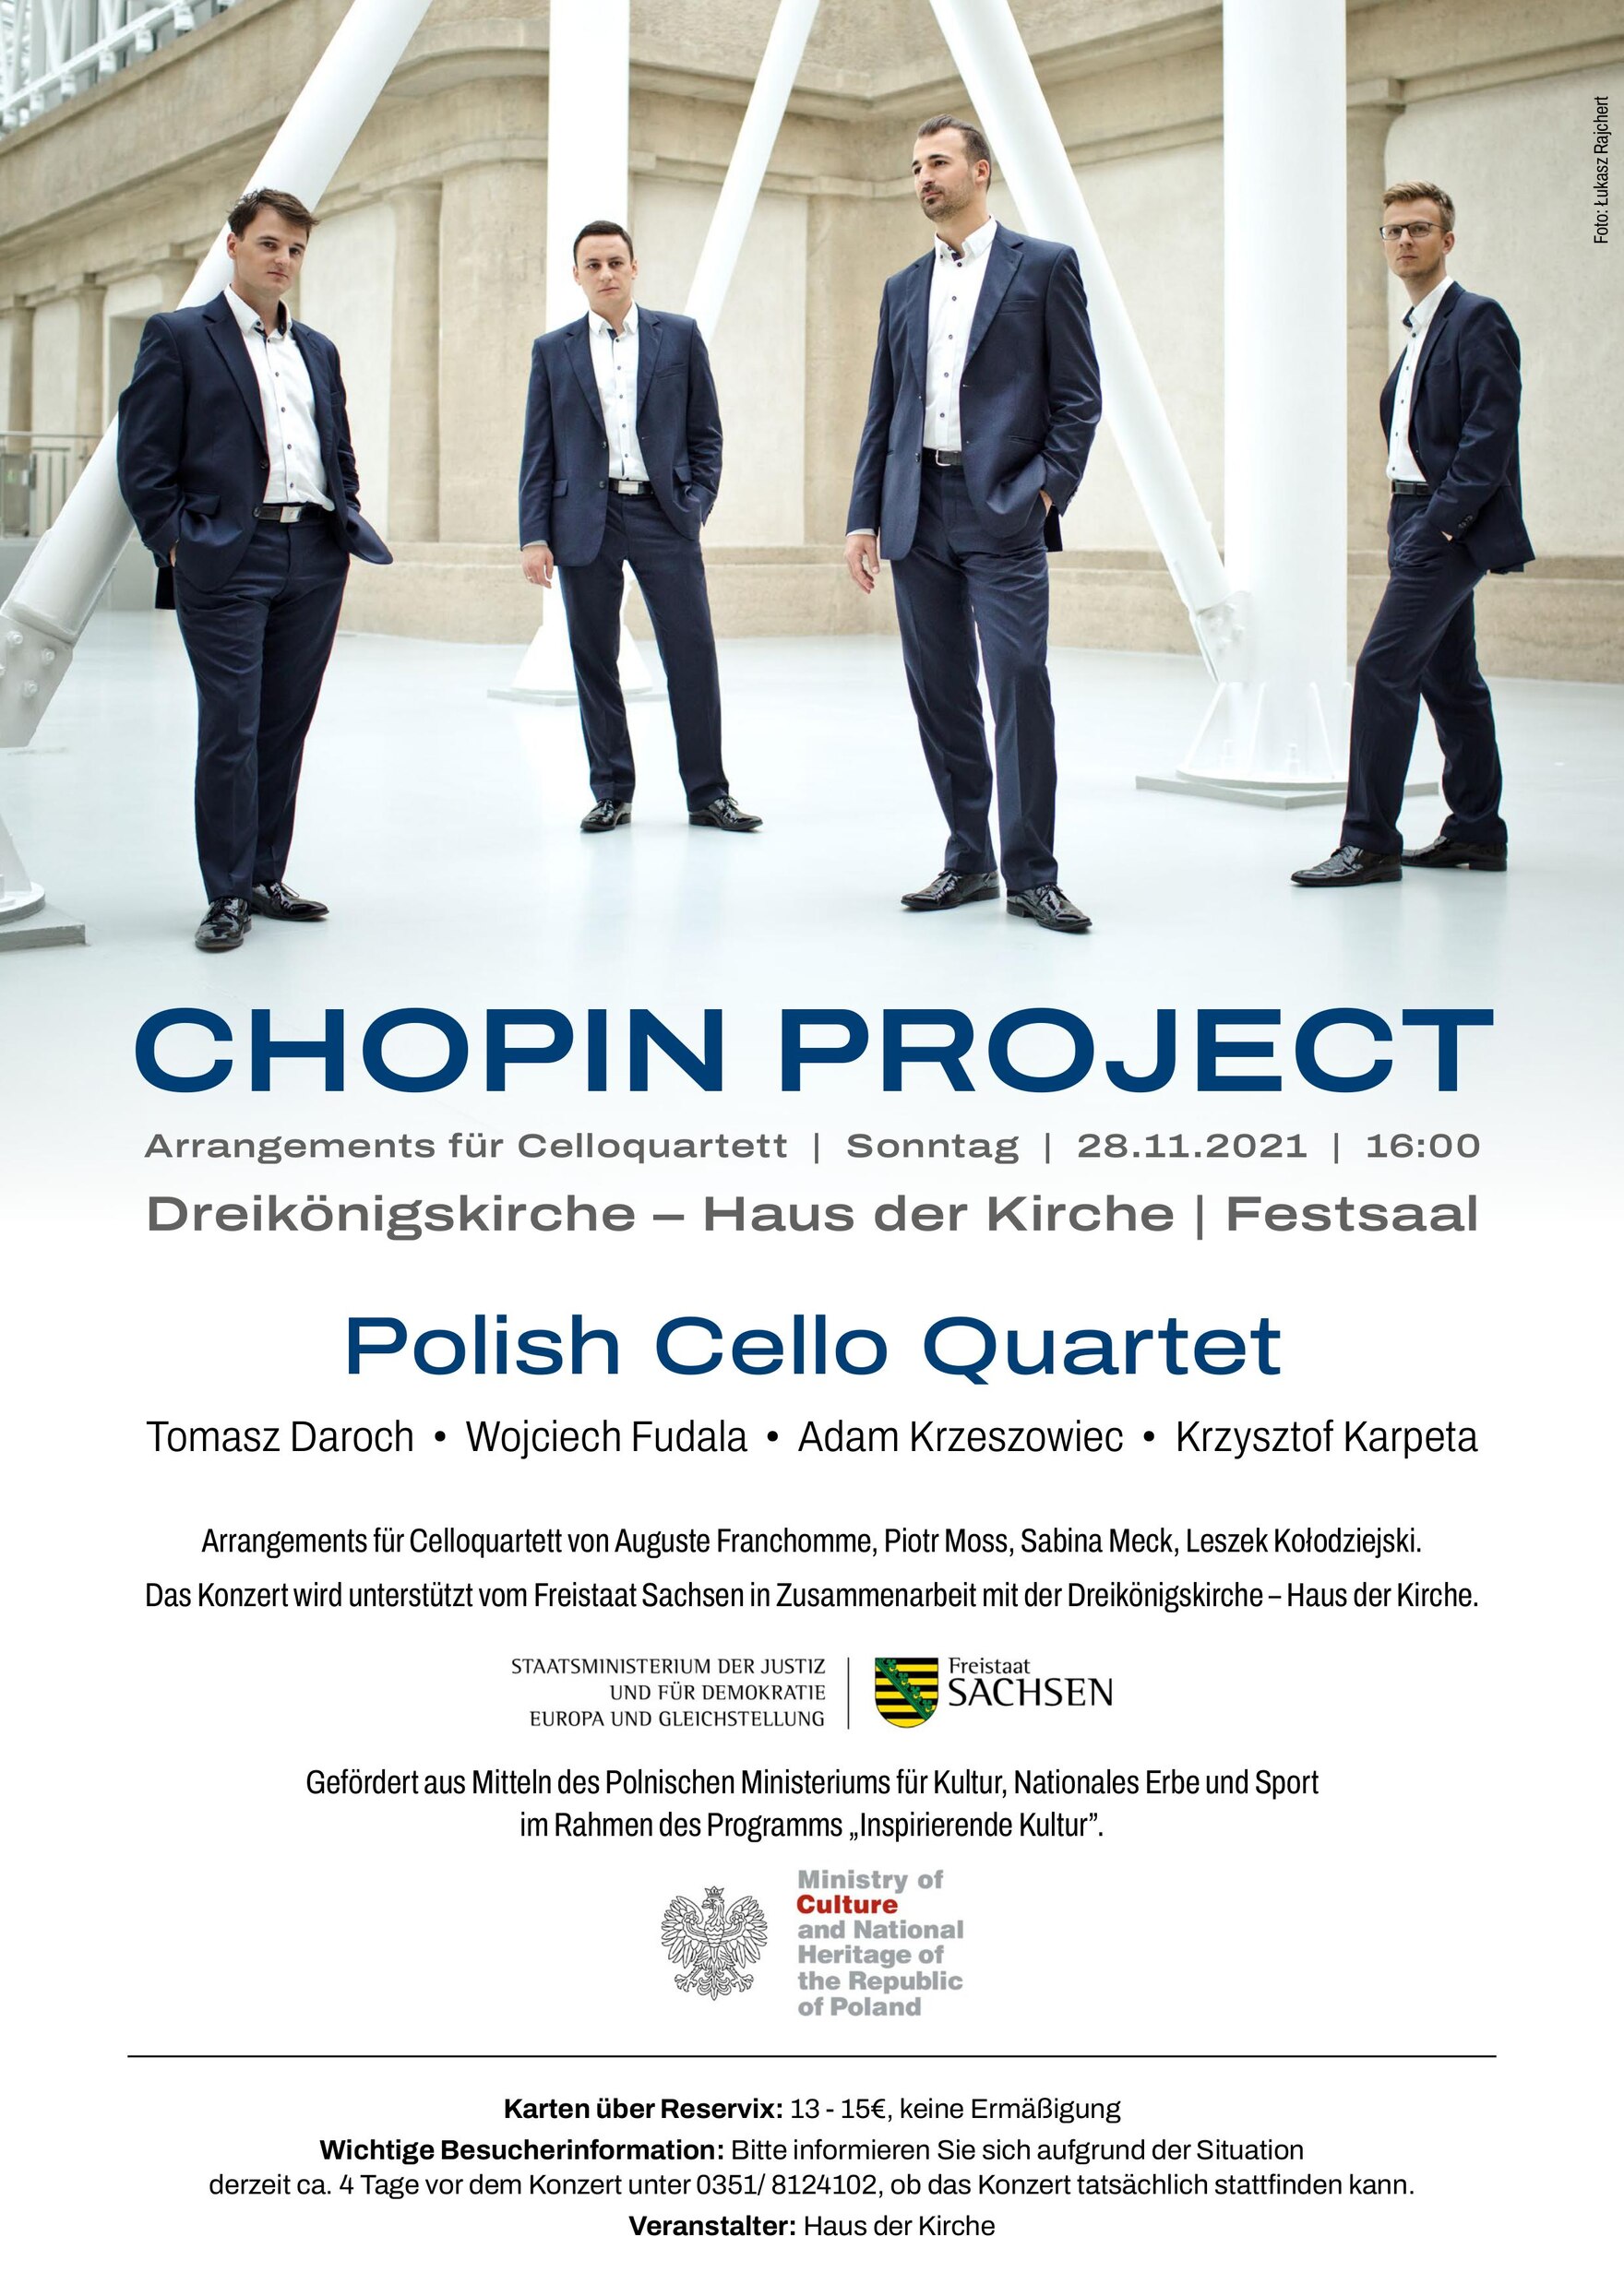 Plakat der Veranstaltung: Chopin Projects, Arrangements für Celloquartett, Sonntag, 28. November 2021, 16 Uhr. Karten von 13 bis 15 Euro, Besucherinformationen unter 0351 8124102